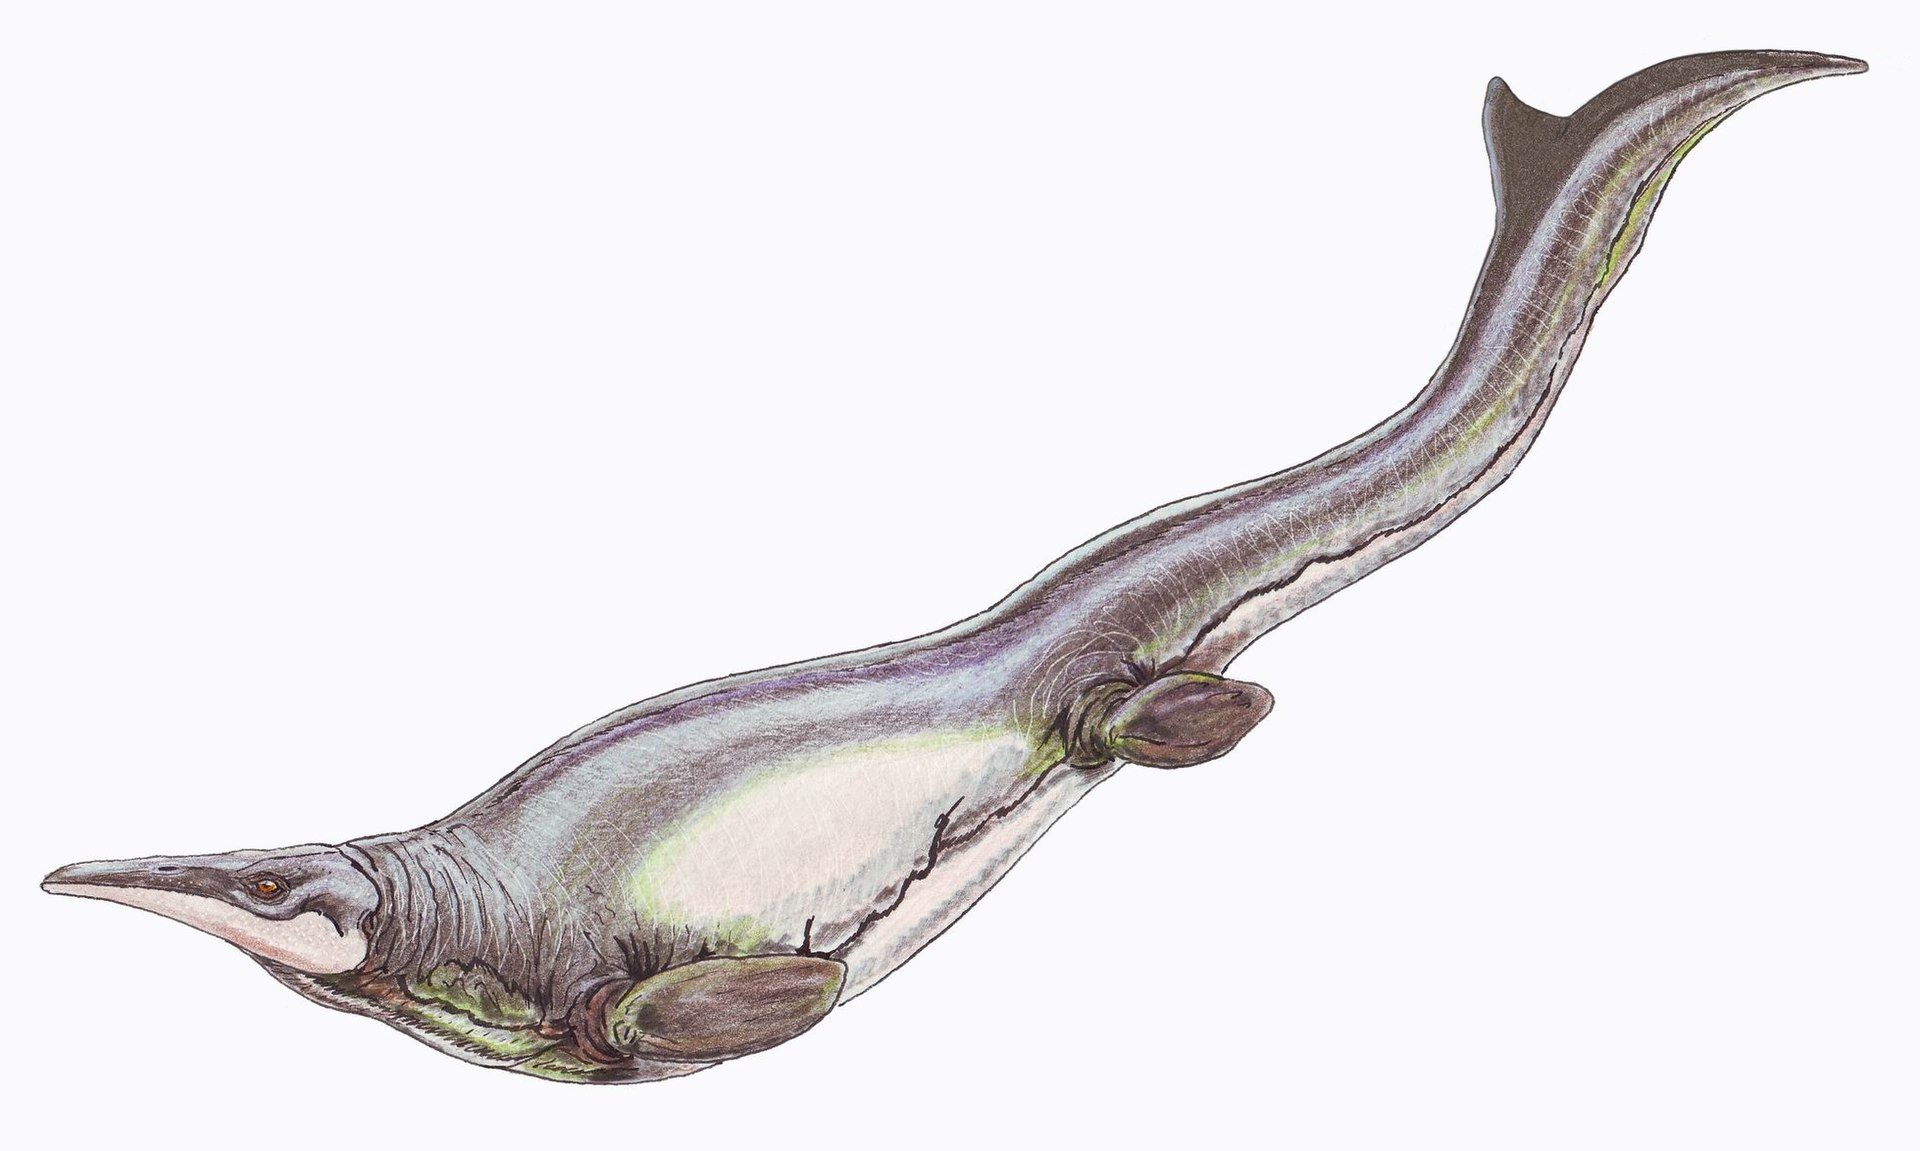 Доісторичний хижак, який жив 150 мільйонів років тому, зовні більше нагадує дельфіна, ніж крокодила.